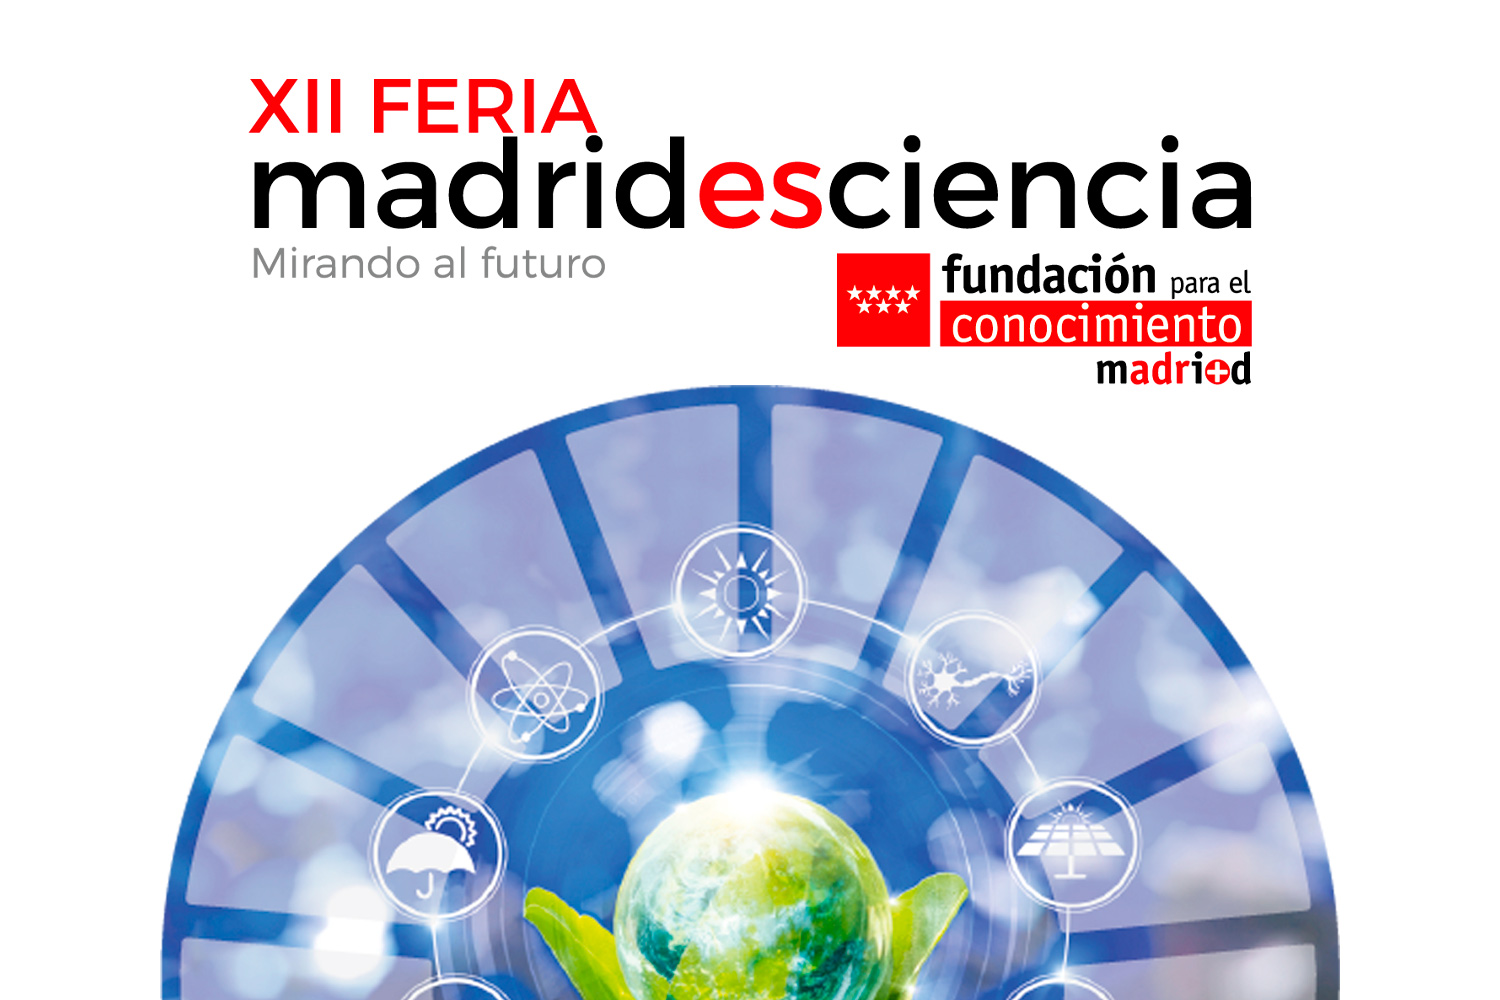 IFEMA hosts the 12th Edition of Madrid es Ciencia